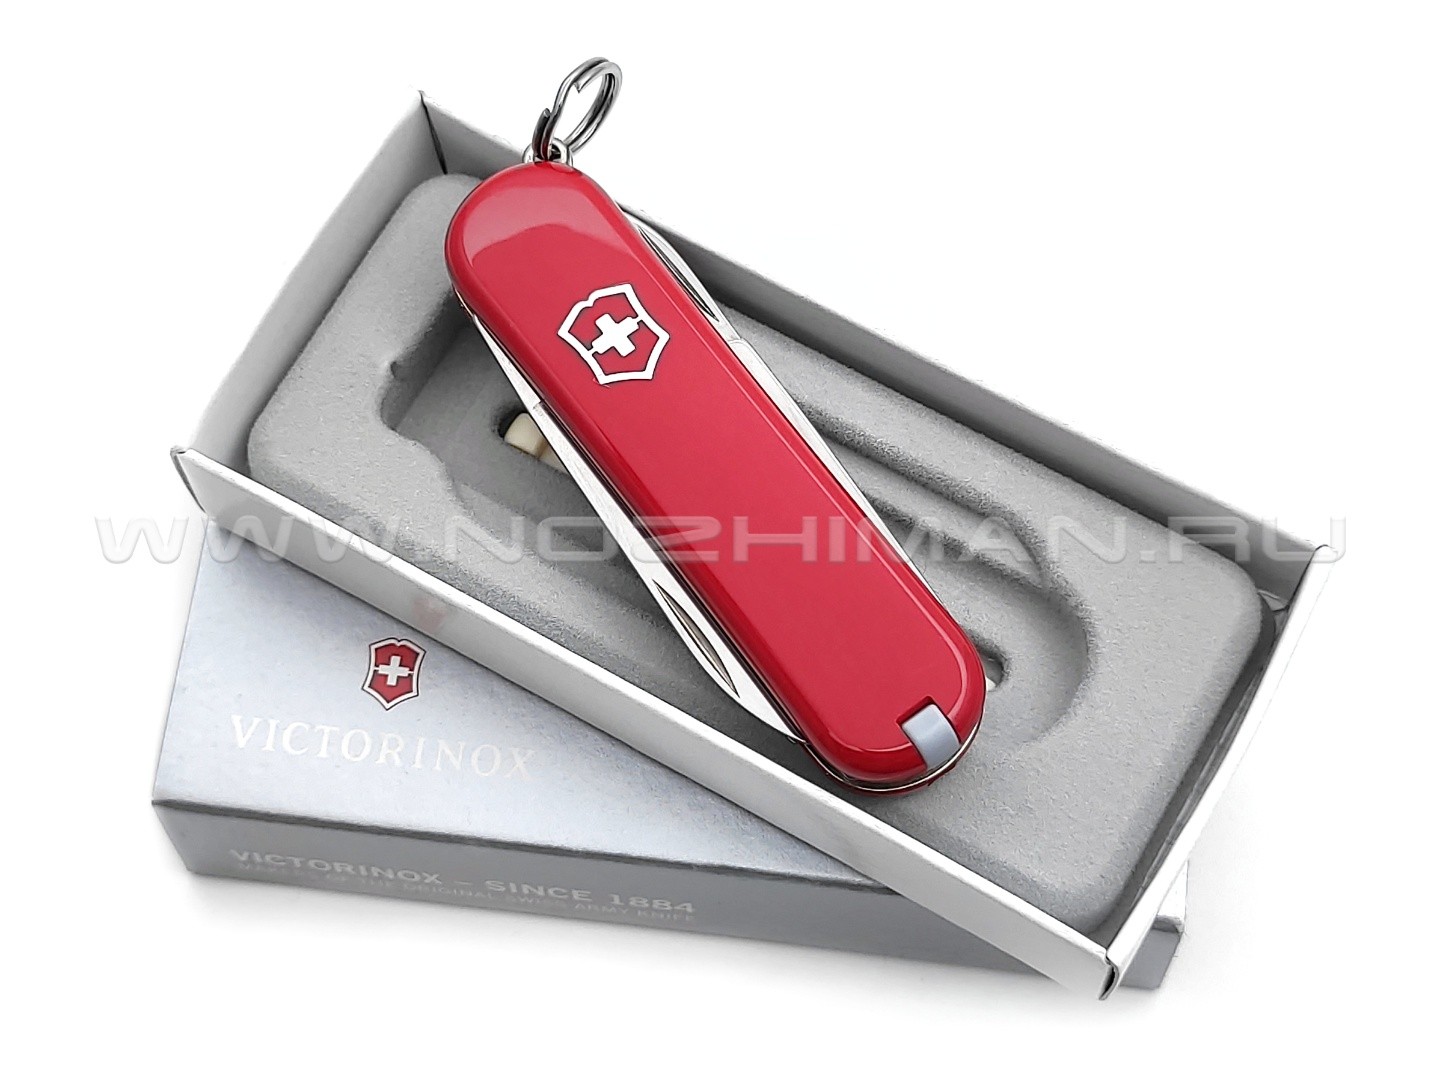 Швейцарский нож Victorinox 0.6225 Signature Red (8 функции)